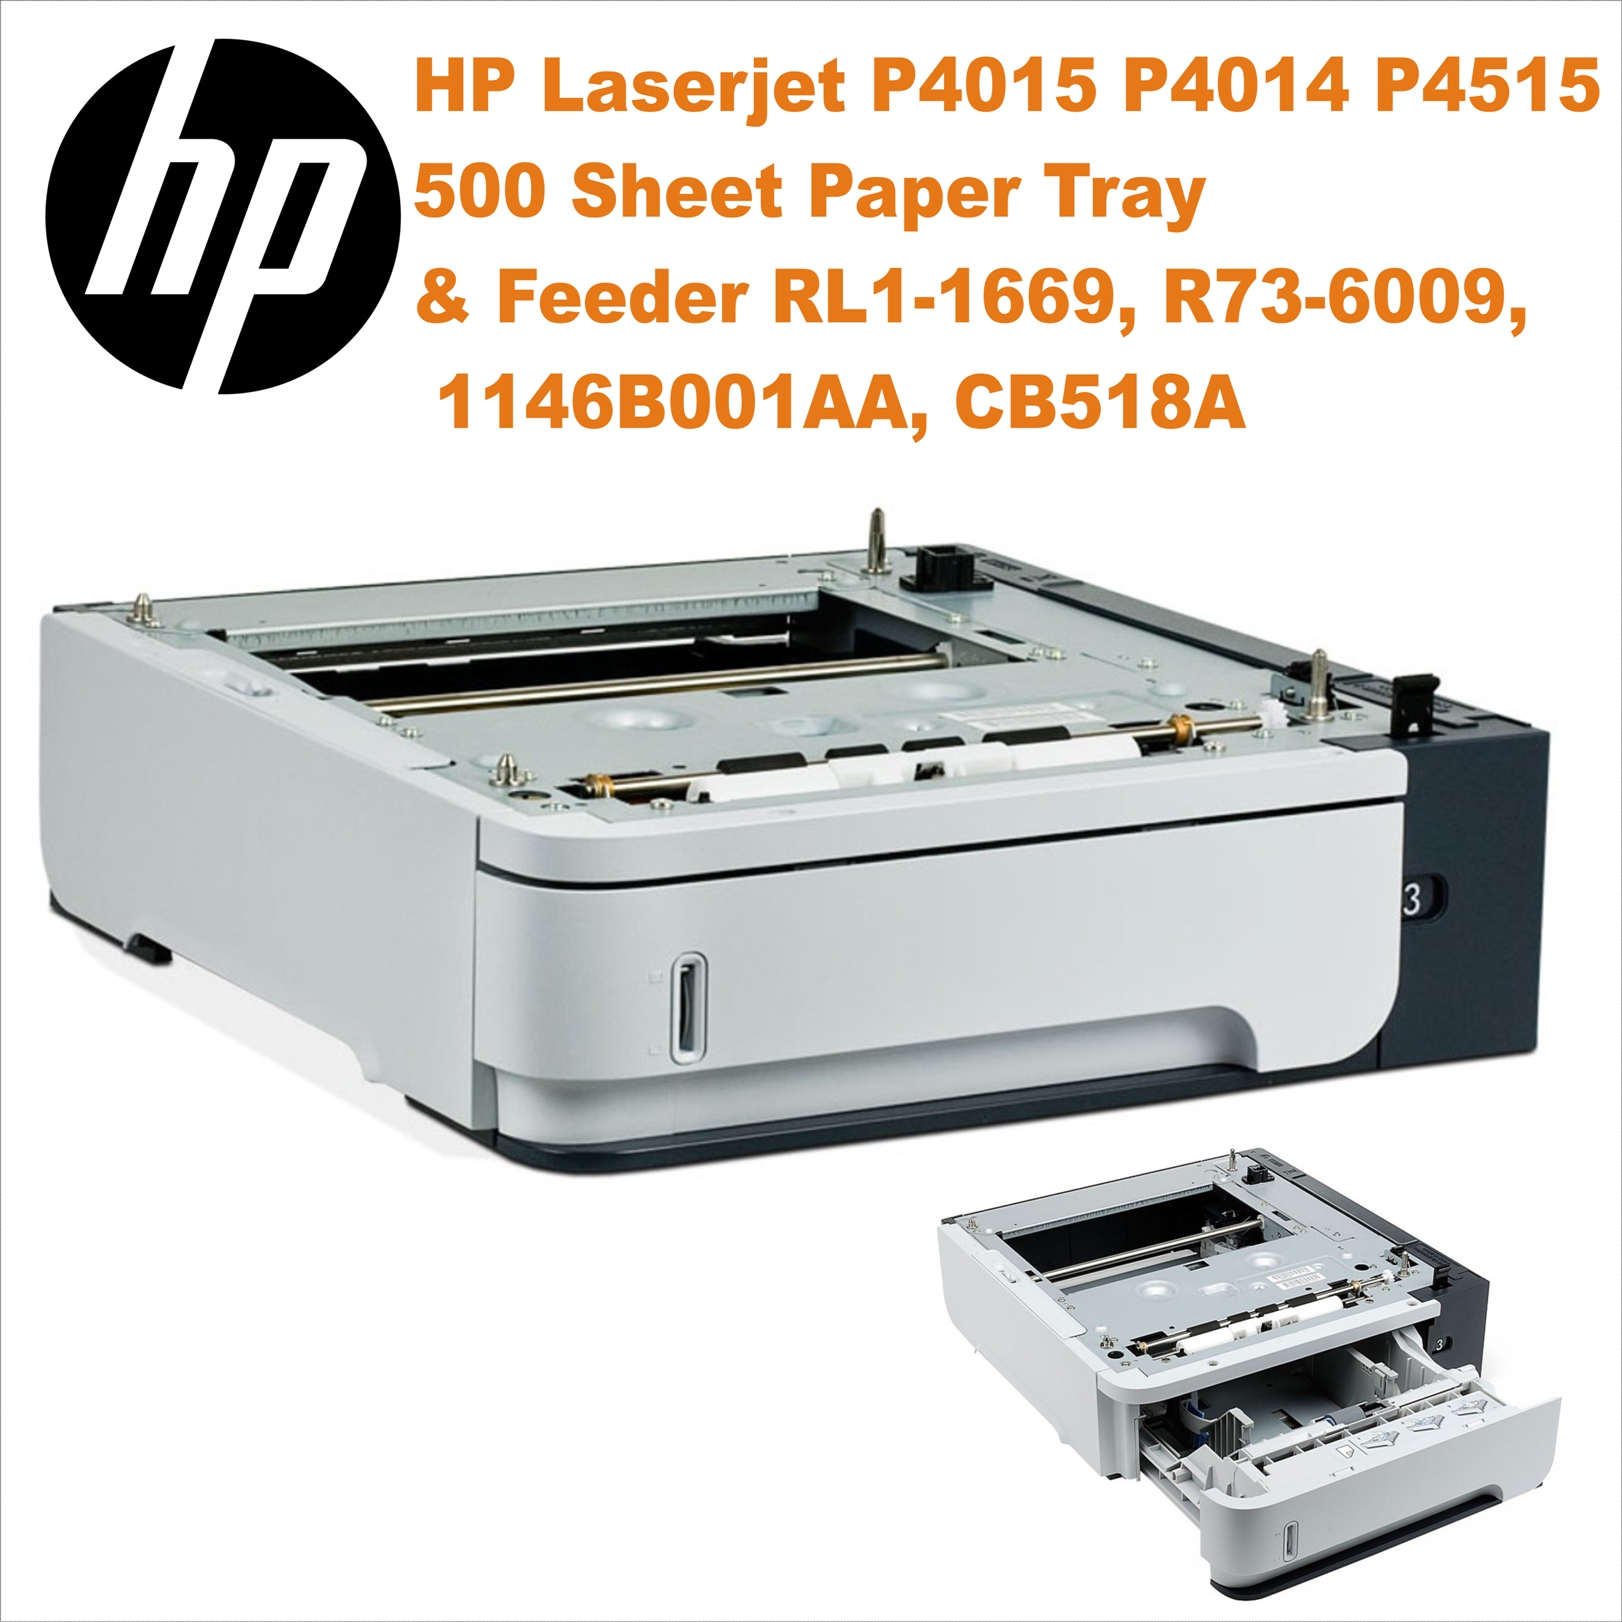 HP Laserjet P4015 P4014 P4515 500 Sheet Paper